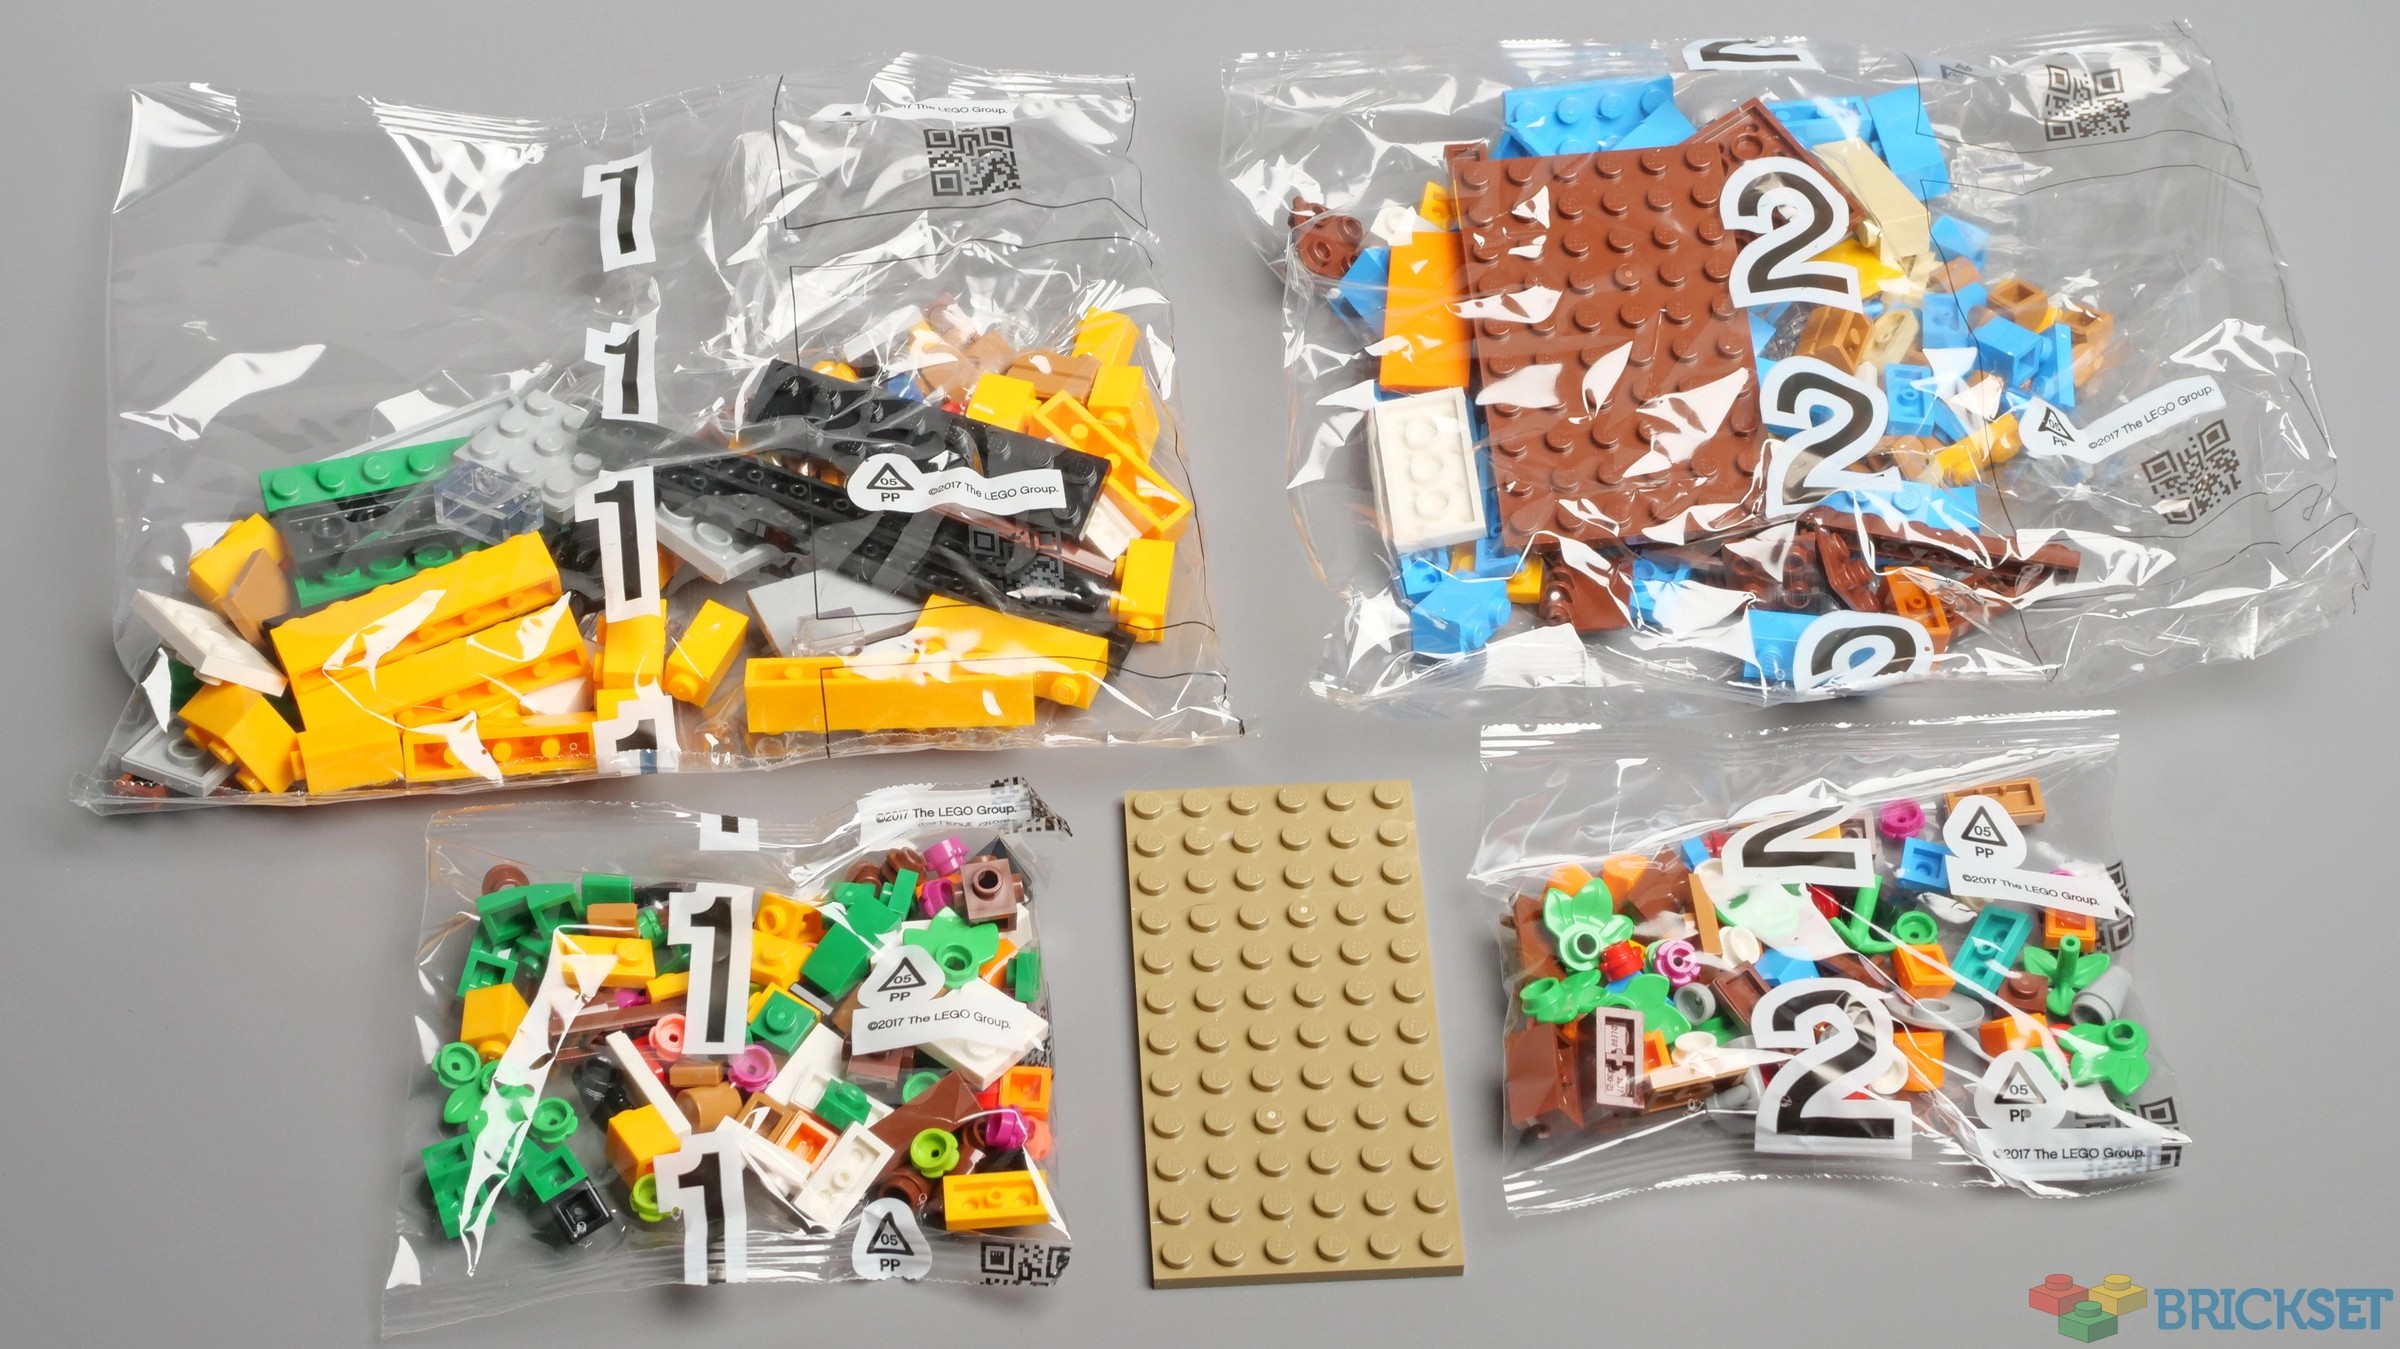 LEGO Houses of the World 1 revealed